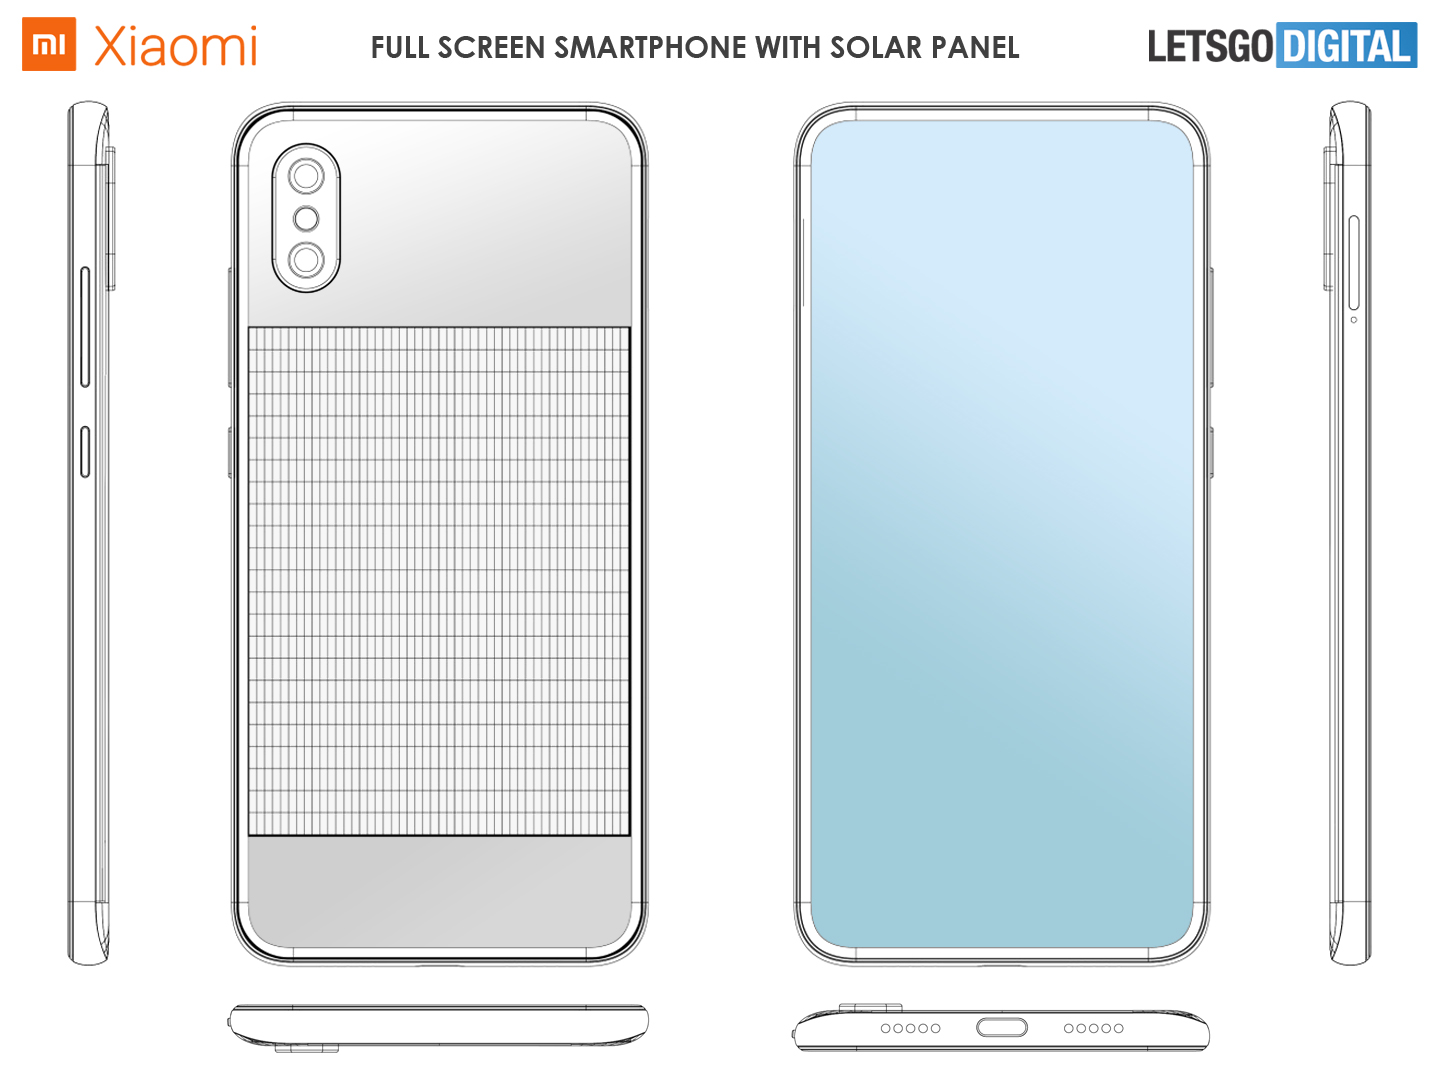 telegram Buitensporig Oriënteren Zonnepaneel voorziet Xiaomi smartphone van volle batterij | LetsGoDigital